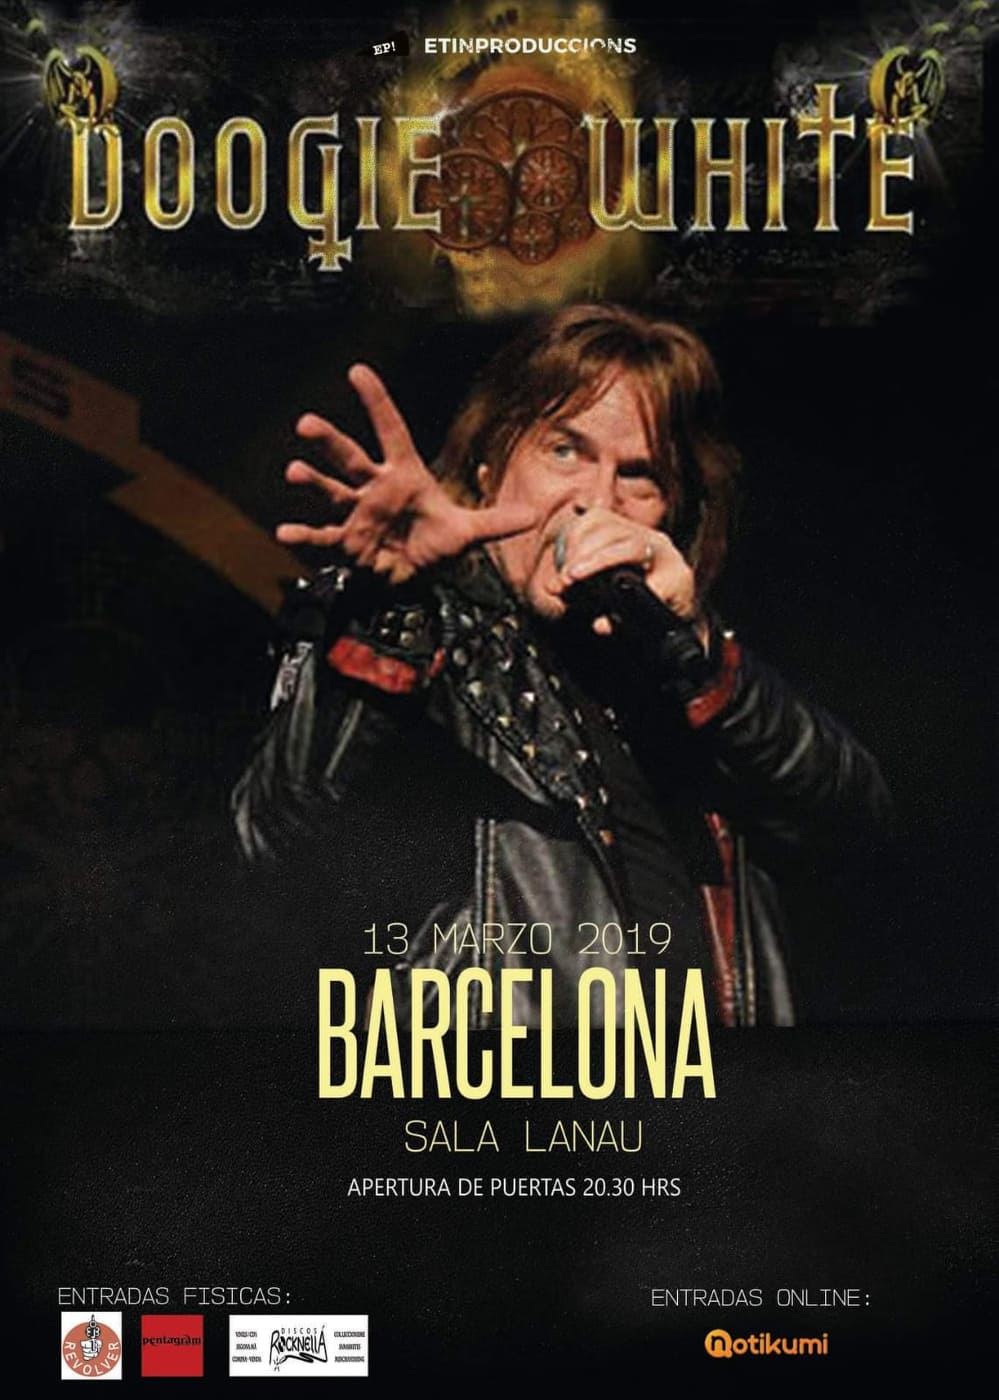 Doogie White en Barcelona el día 13